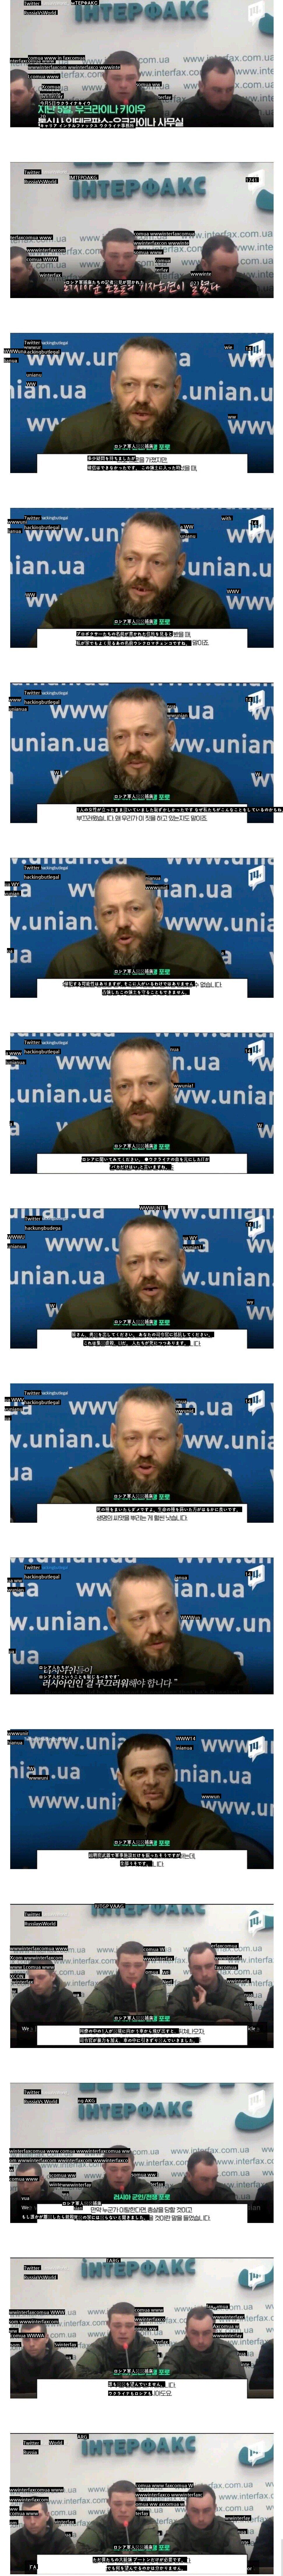 ロシア捕虜ウクライナ記者会見